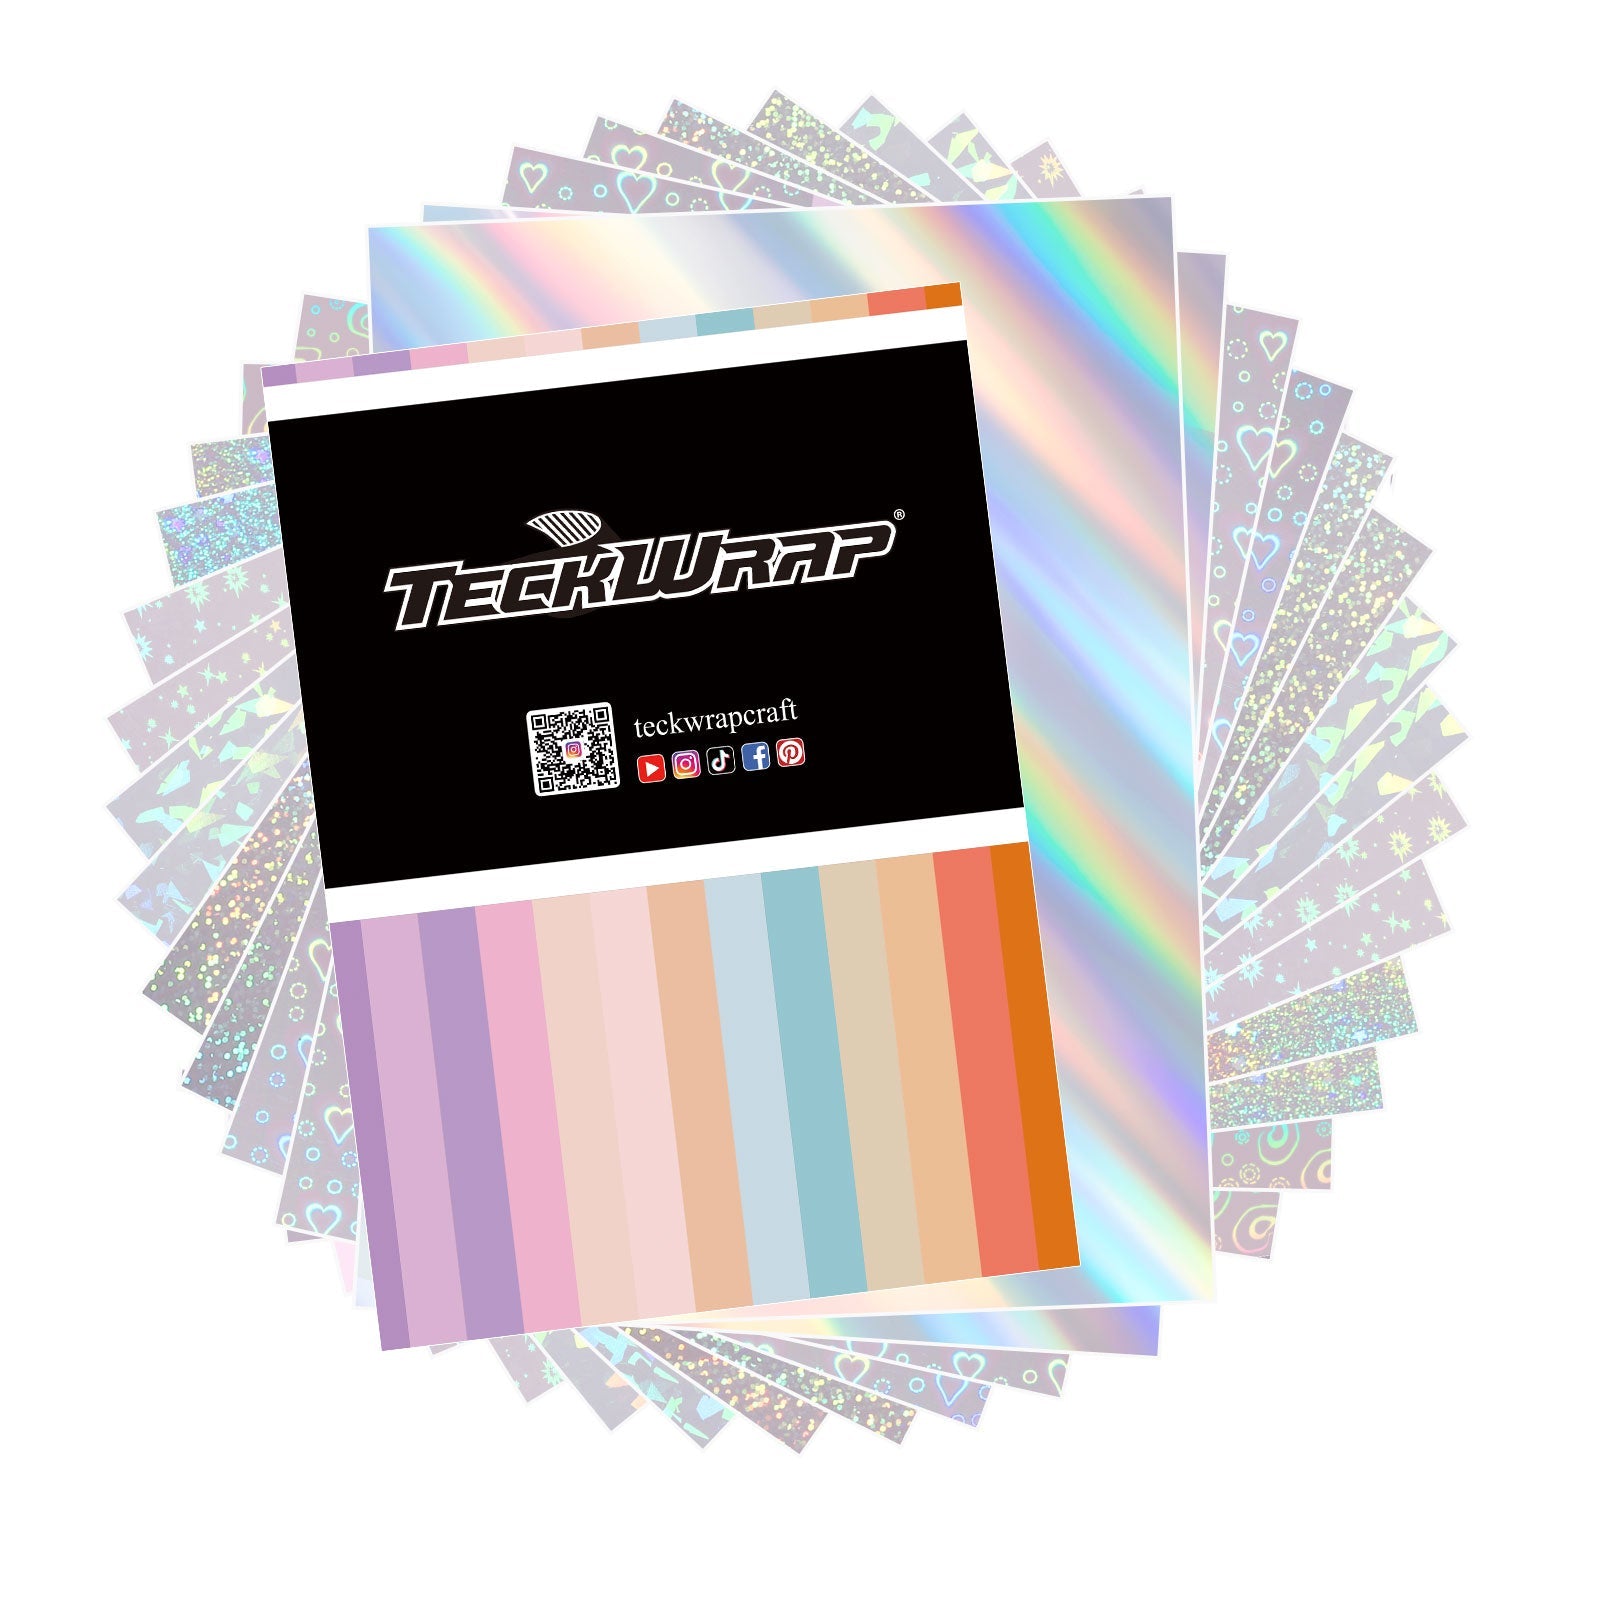 Teckwrapcraft Feuille transparante autocollante holographique - 16 feuilles A4